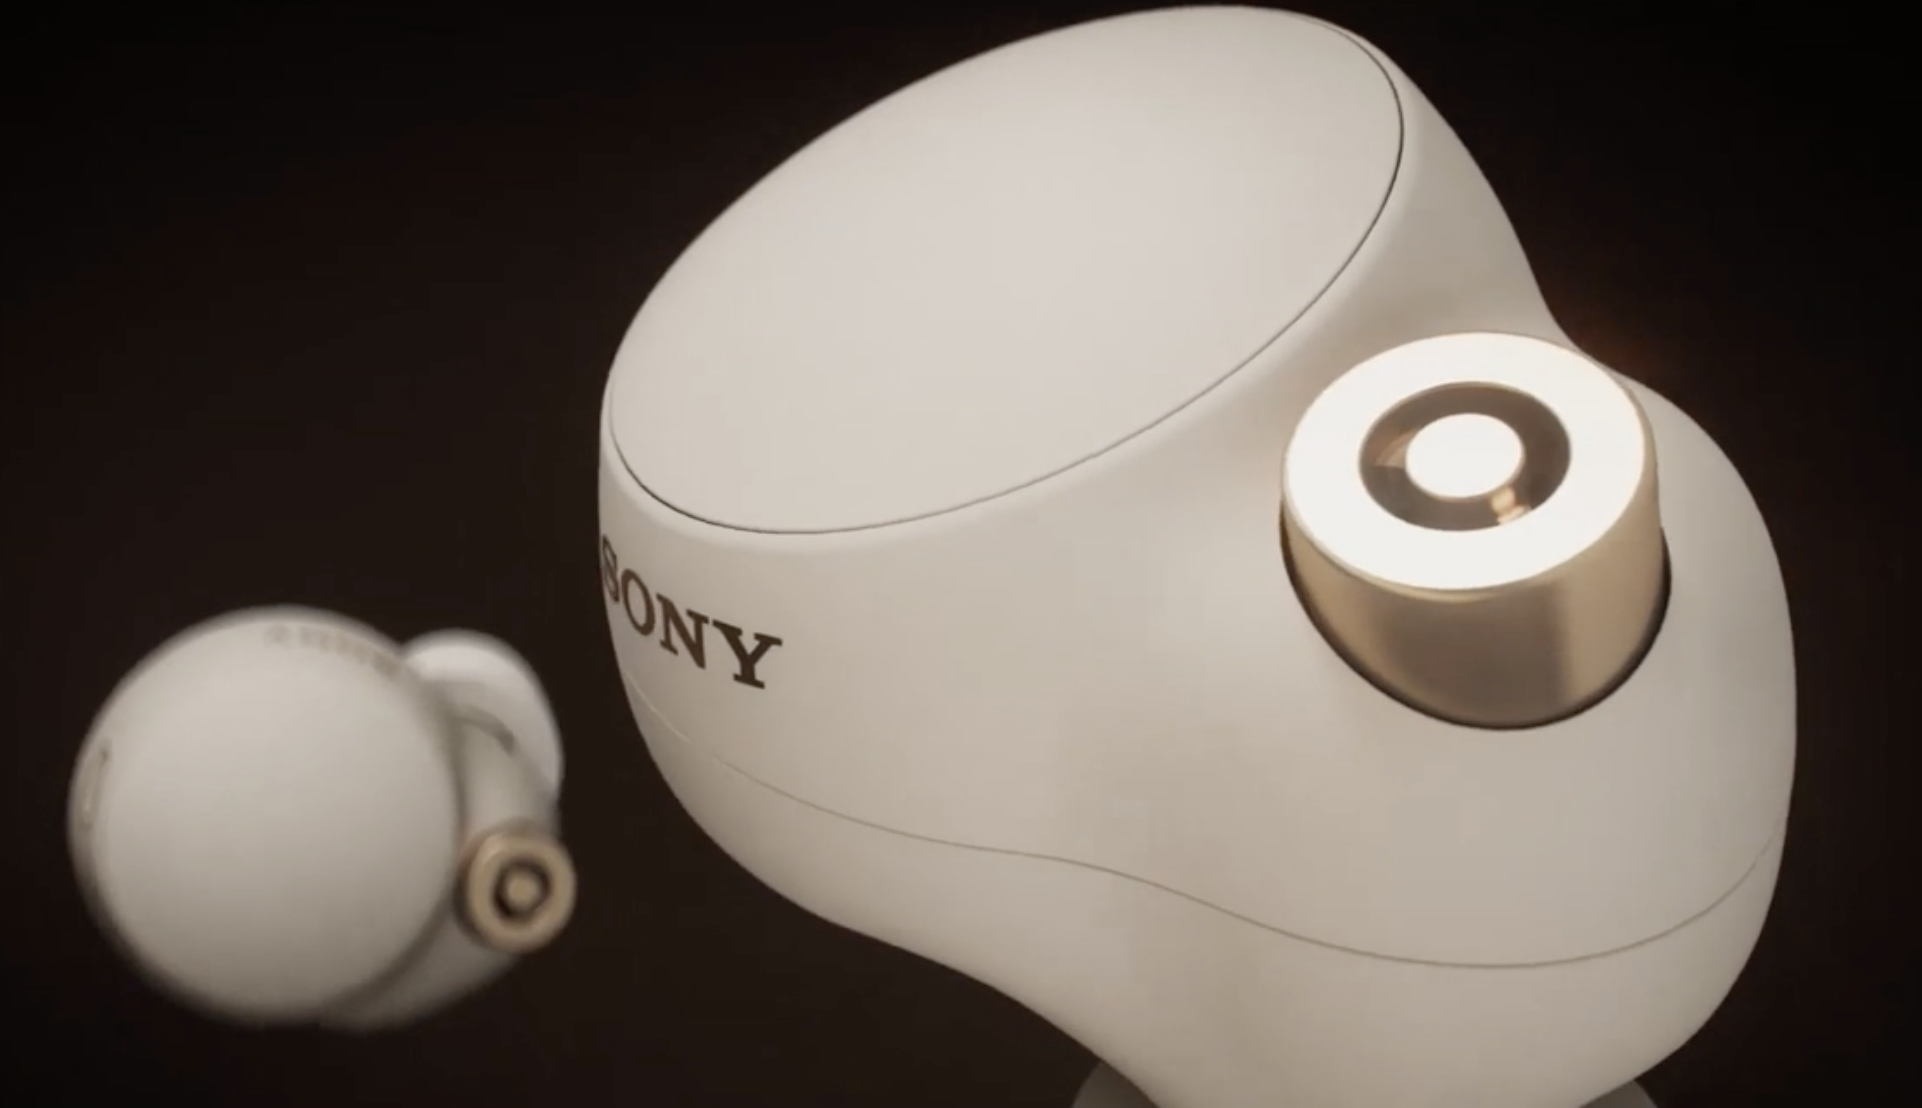 Sony WF-1000XM4 : les nouveaux écouteurs Sony se dévoilent - intégralement - en vidéo